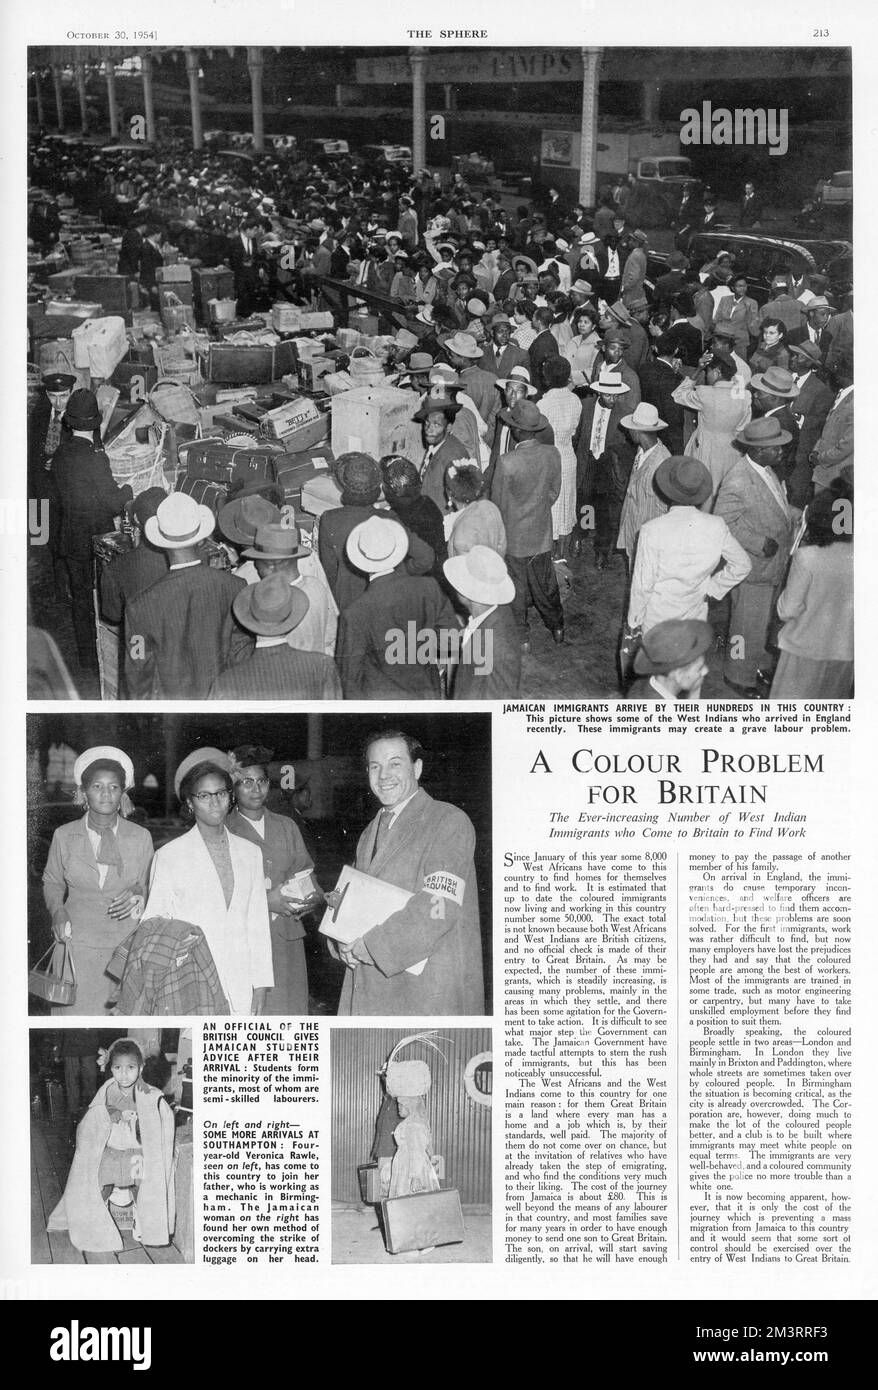 Seite aus der Sphäre berichtet über die wahrgenommene Bedrohung des Arbeitsmarktes in Großbritannien durch den Zustrom westindischer Einwanderer, insbesondere Jamaikaner, während der 1950er Jahre. Sechzig Jahre später werden dieselben Argumente immer noch für die Begrenzung der Einwanderungsquoten auf das Vereinigte Königreich verwendet. Datum: 1954 Stockfoto